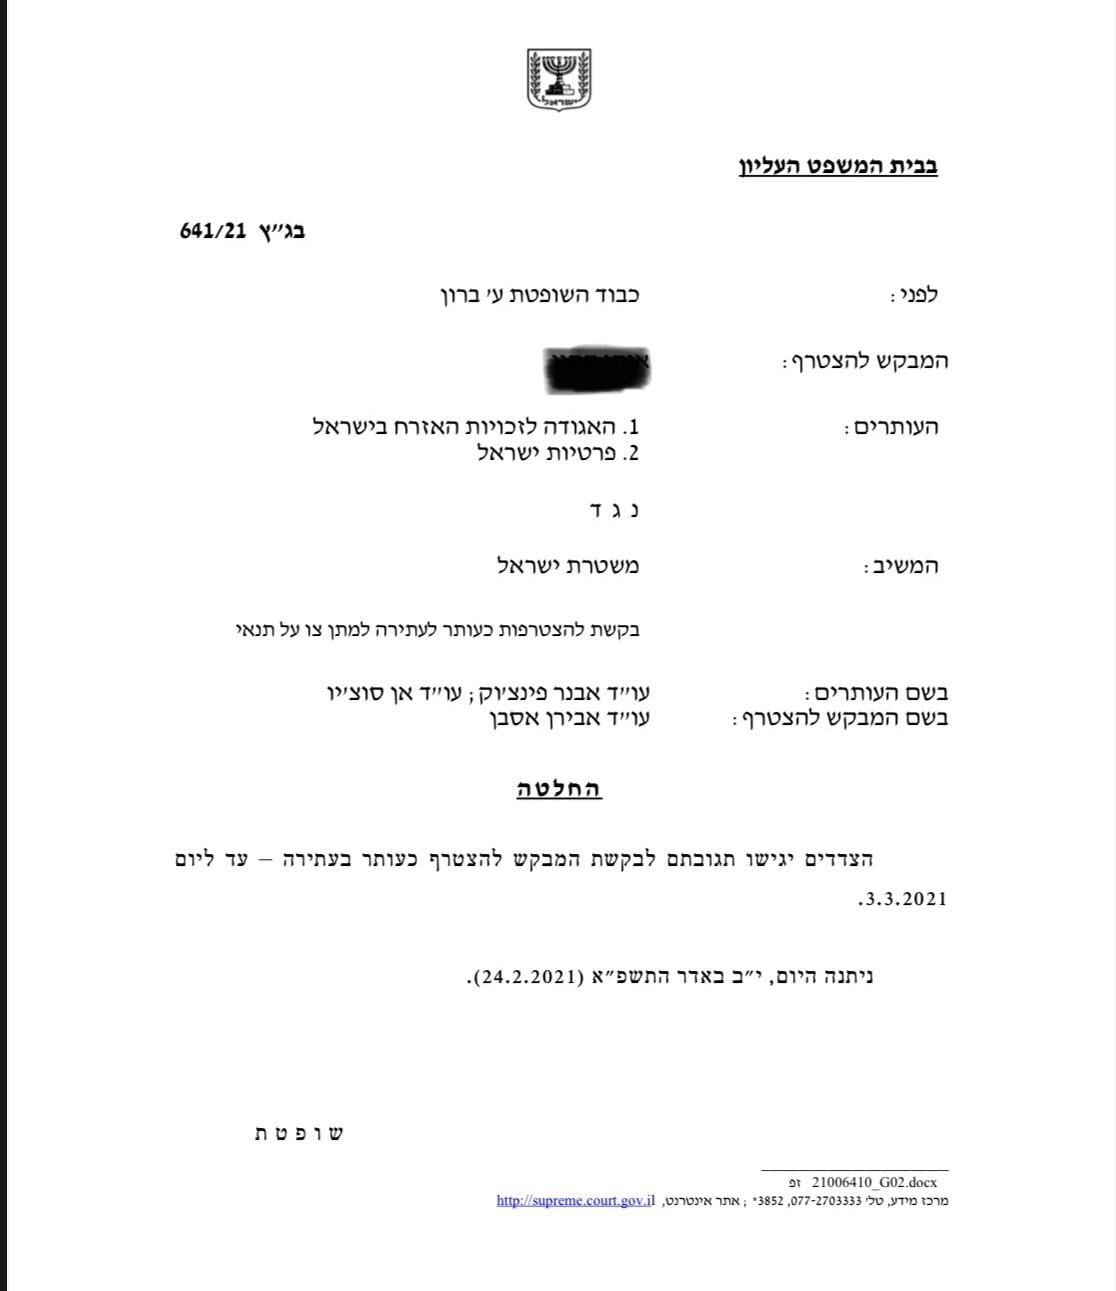 עתירת בג"ץ 641/21 האגודה לזכויות האזרח בישראל פרטיות ישראל נ' המדינה